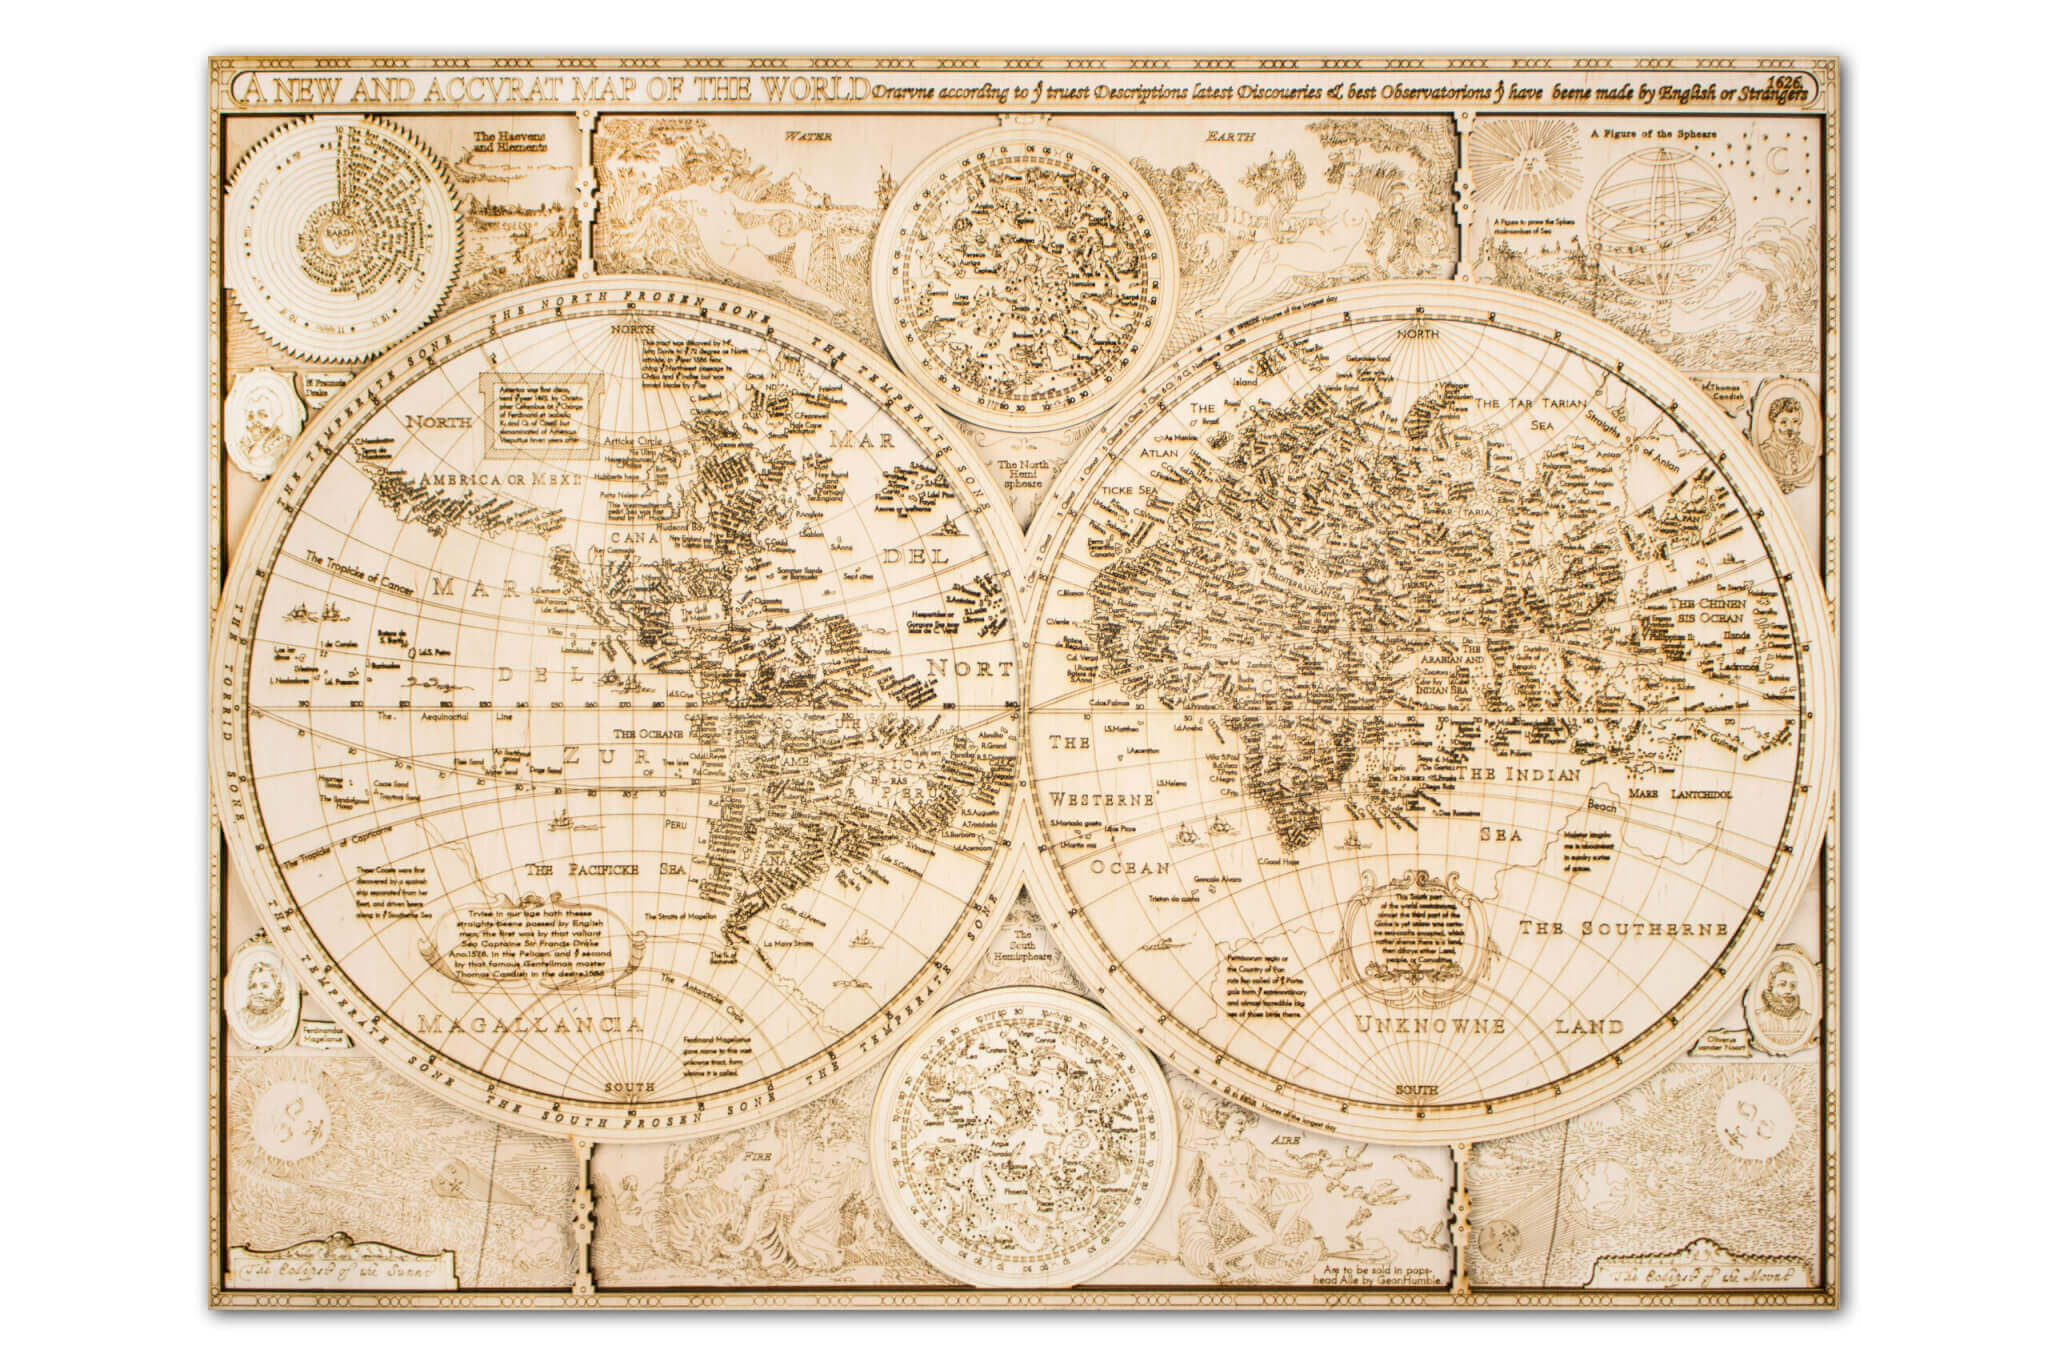 Historical Wooden World Map - full detail